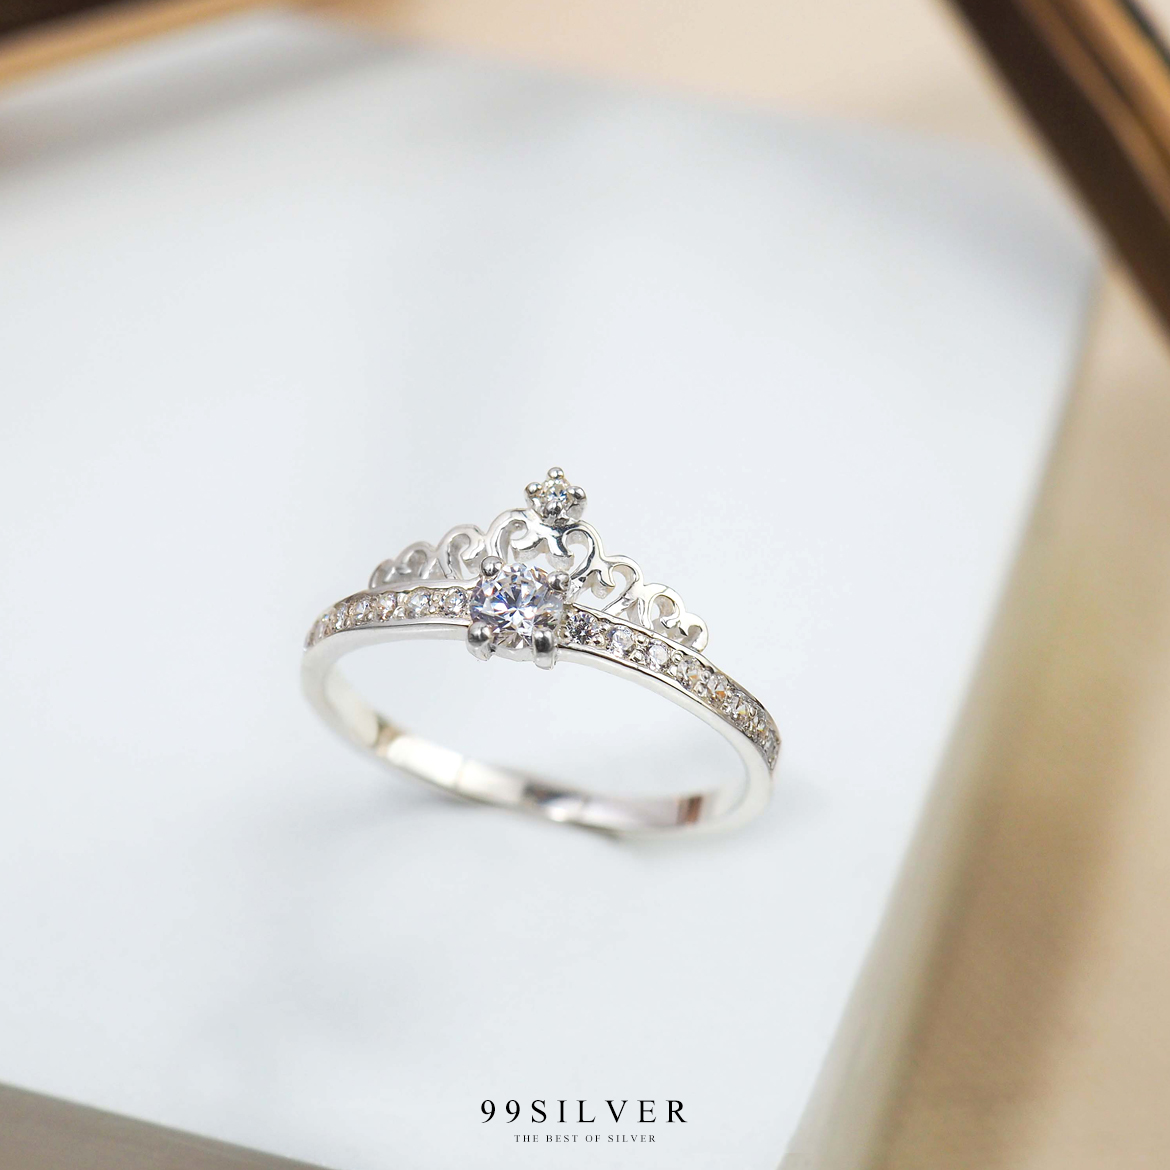 แหวนมงกุฎเจ้าหญิง ประดับเพชรยอด 1 เม็ดพร้อมเพชรเม็ดเล็กที่ก้านแหวน น่ารักสวยงาม